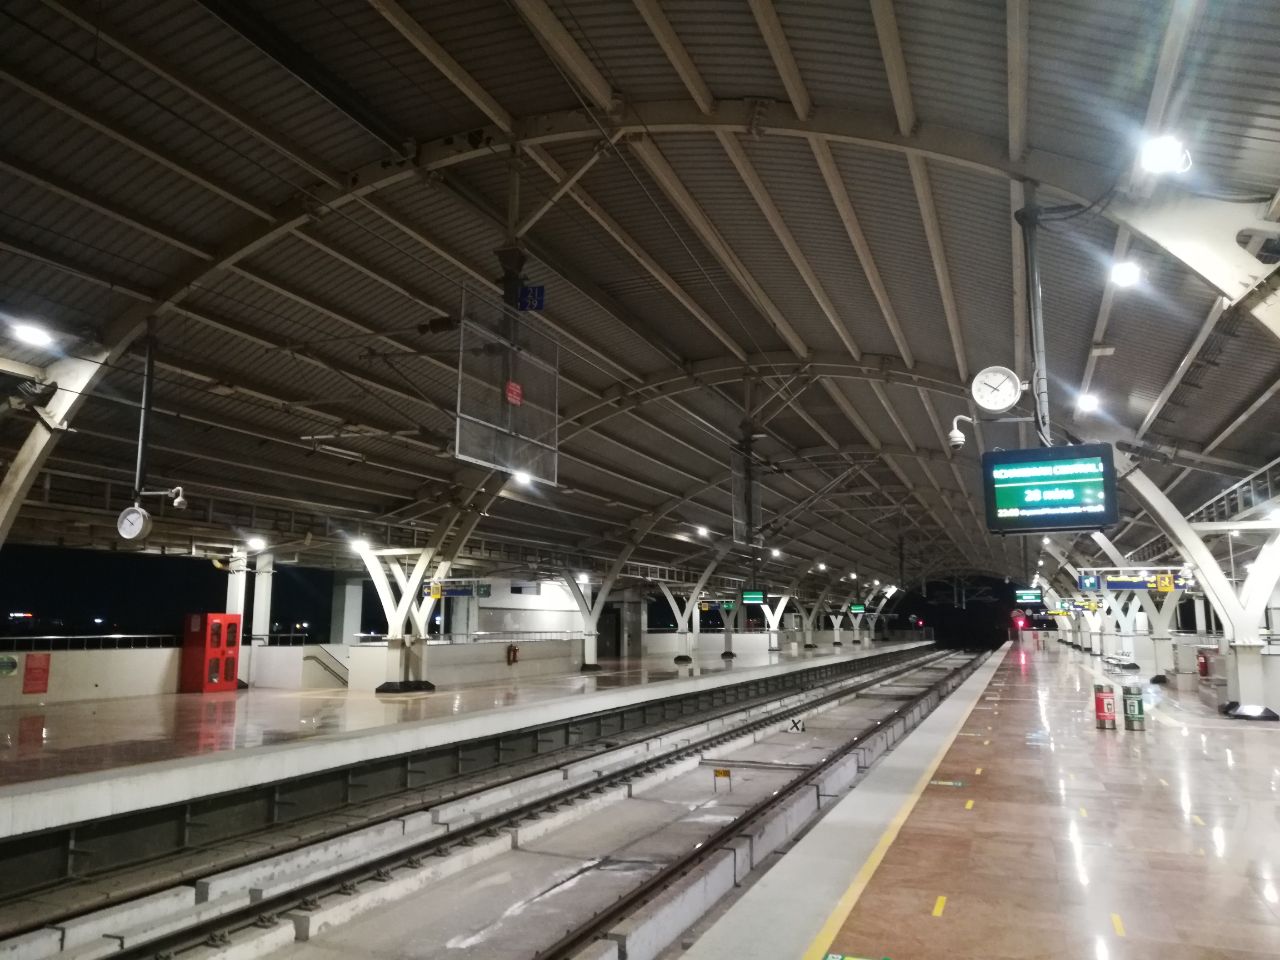 St. Thomas Mount railway station - Wikipedia